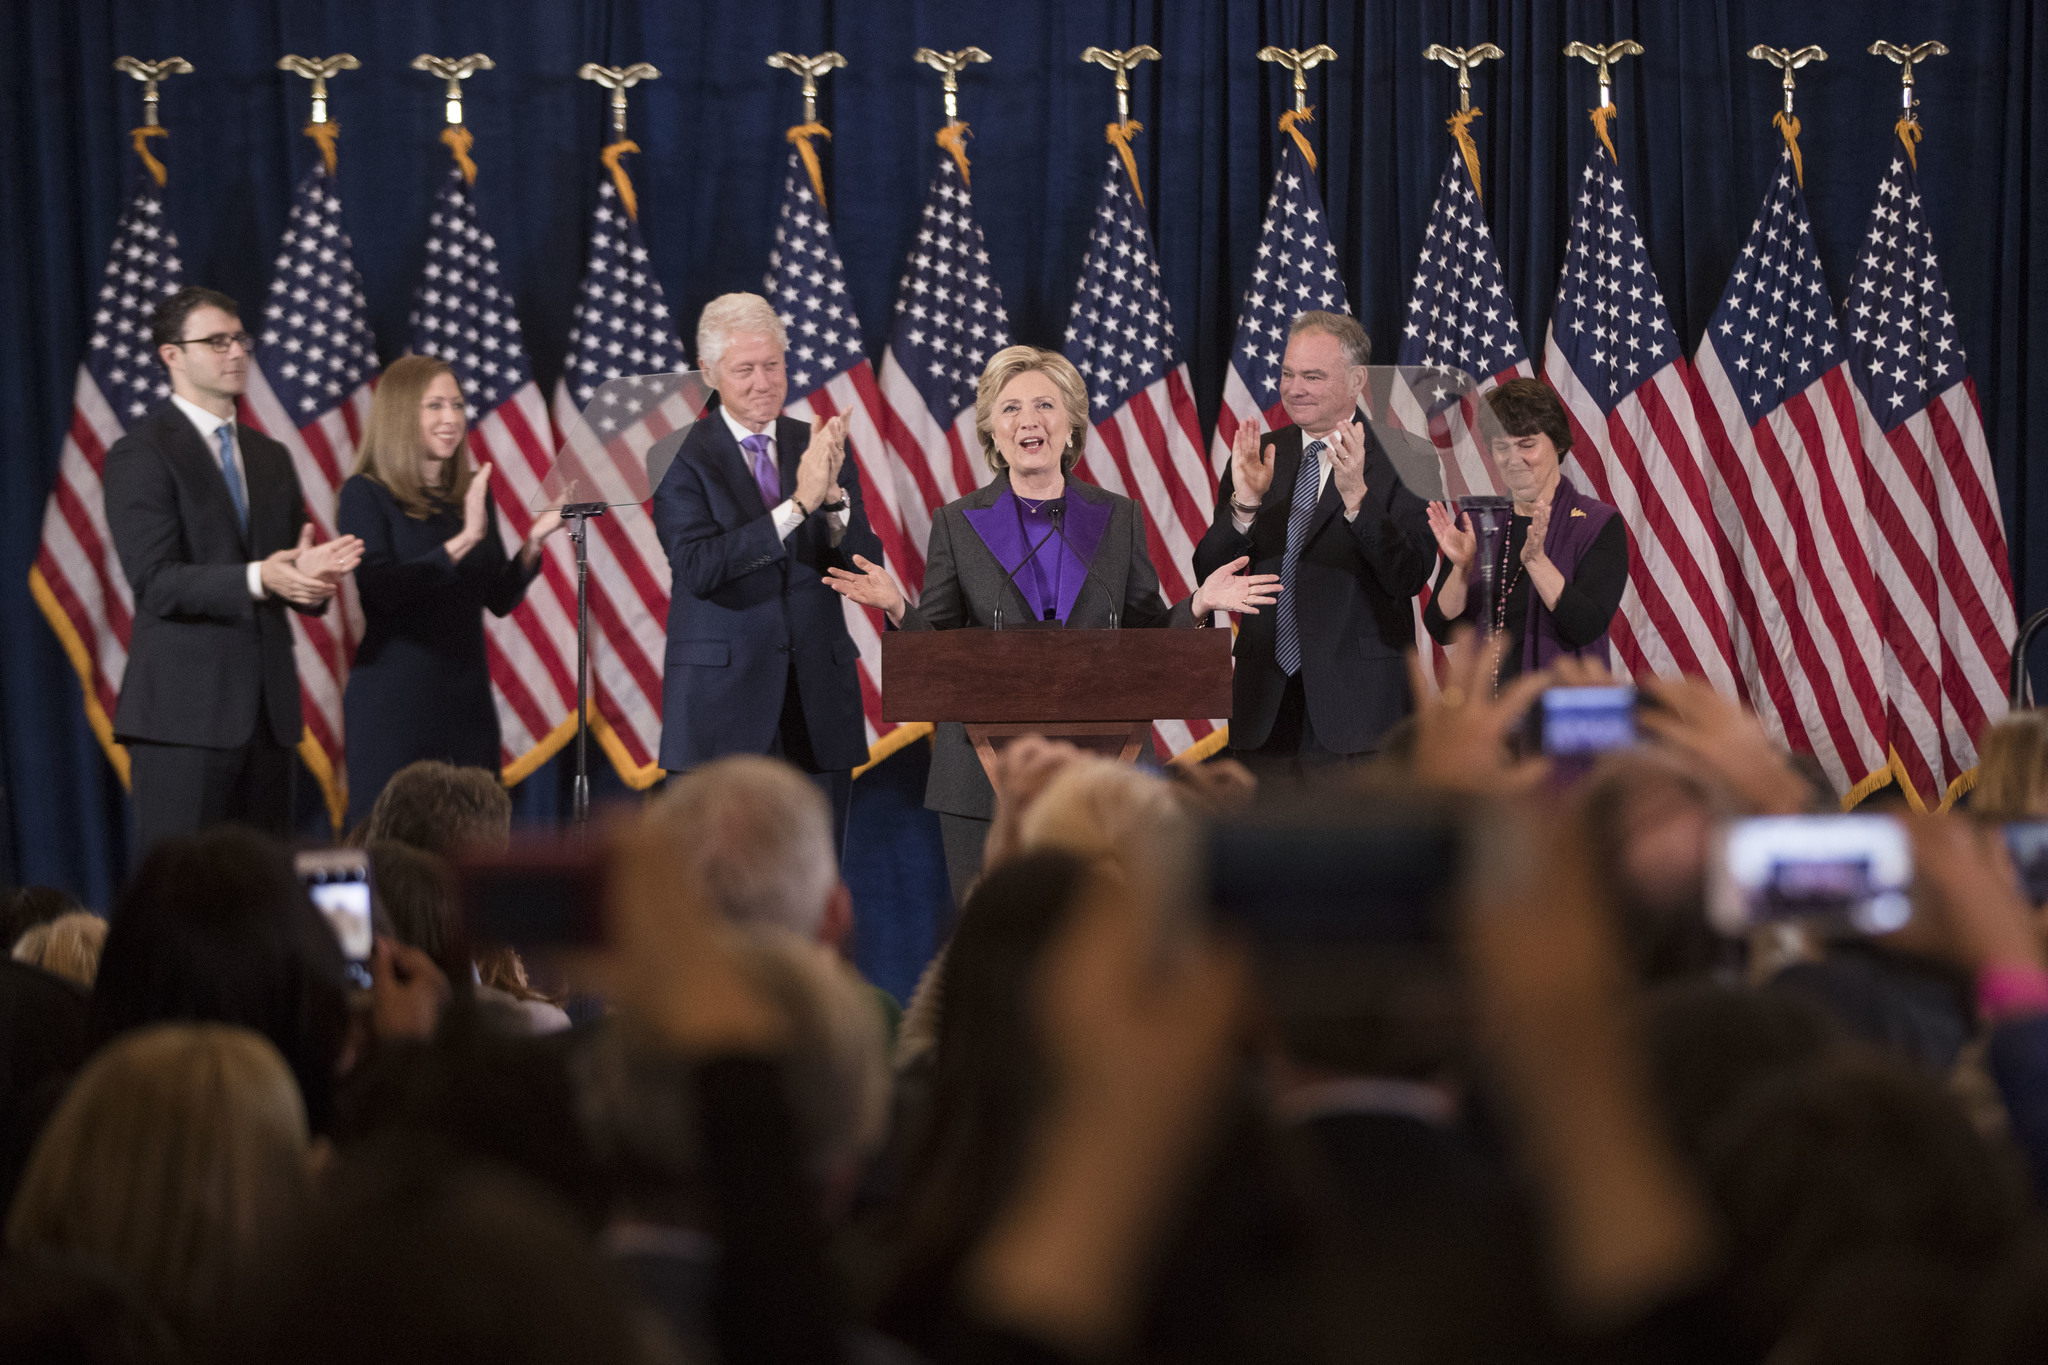 Hillary Clinton en su primera comparecencia tras la jornada electoral.